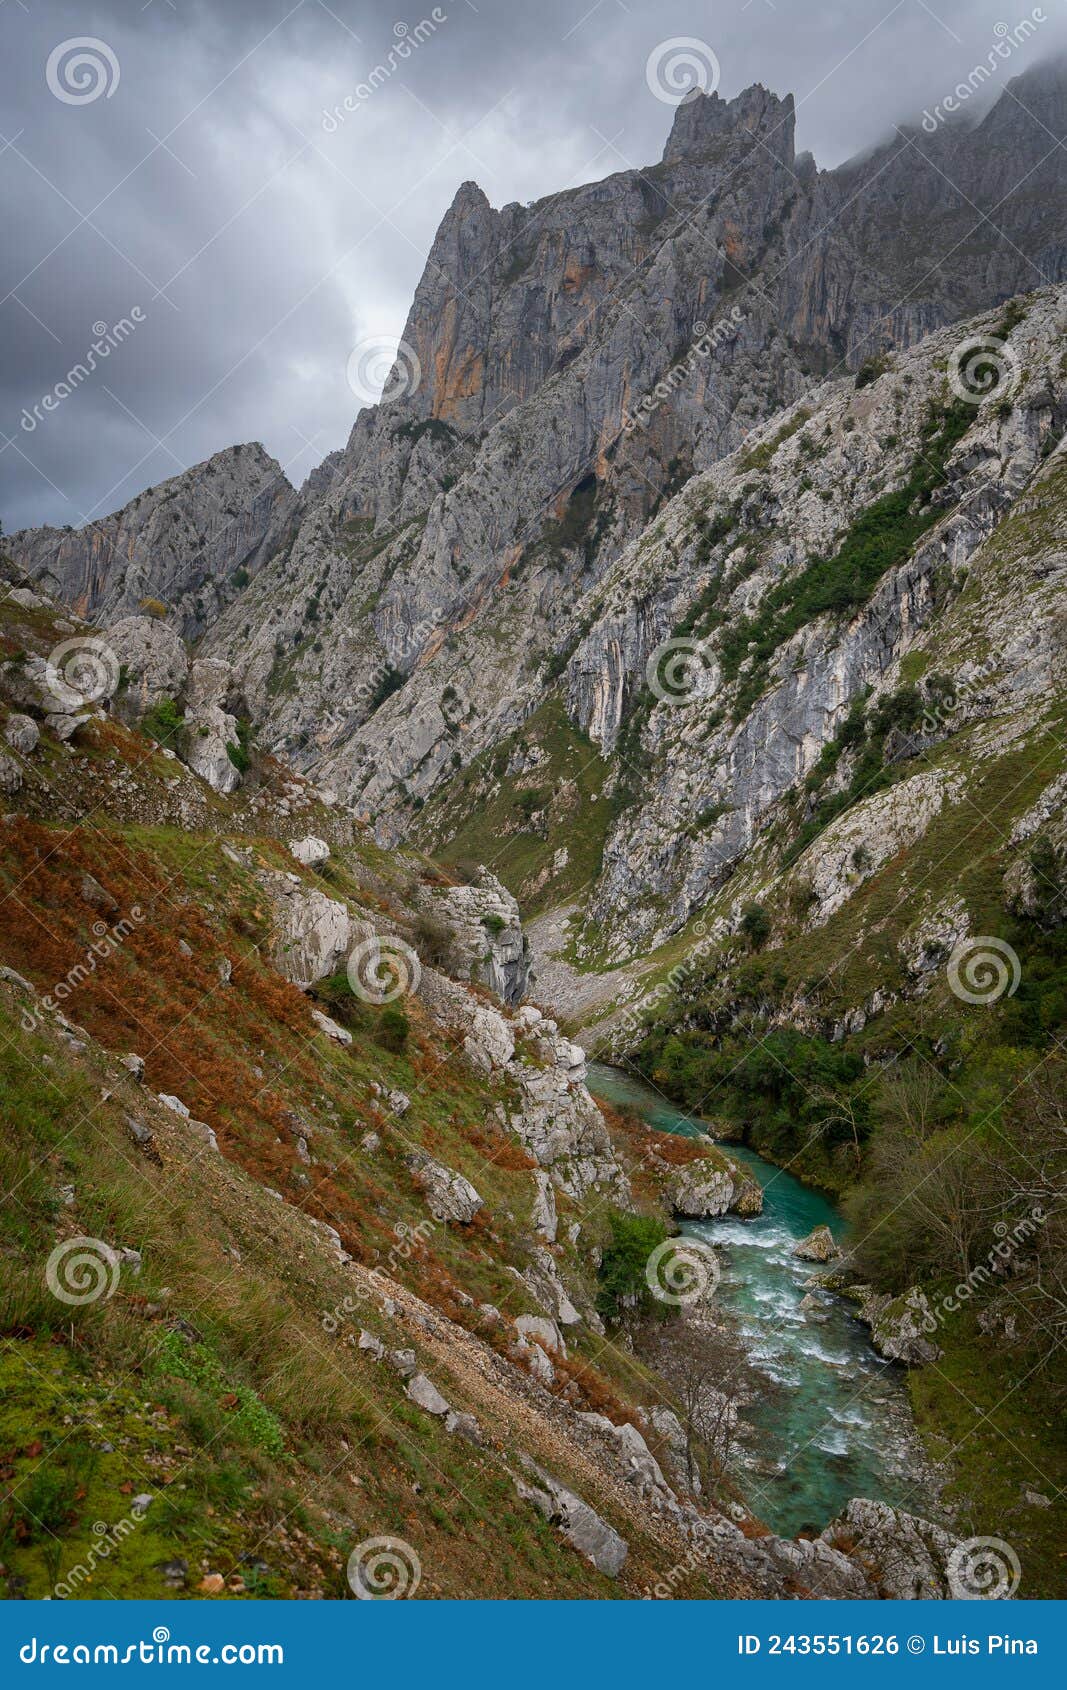 ruta del cares trail nature landscape in picos de europa national park, spain